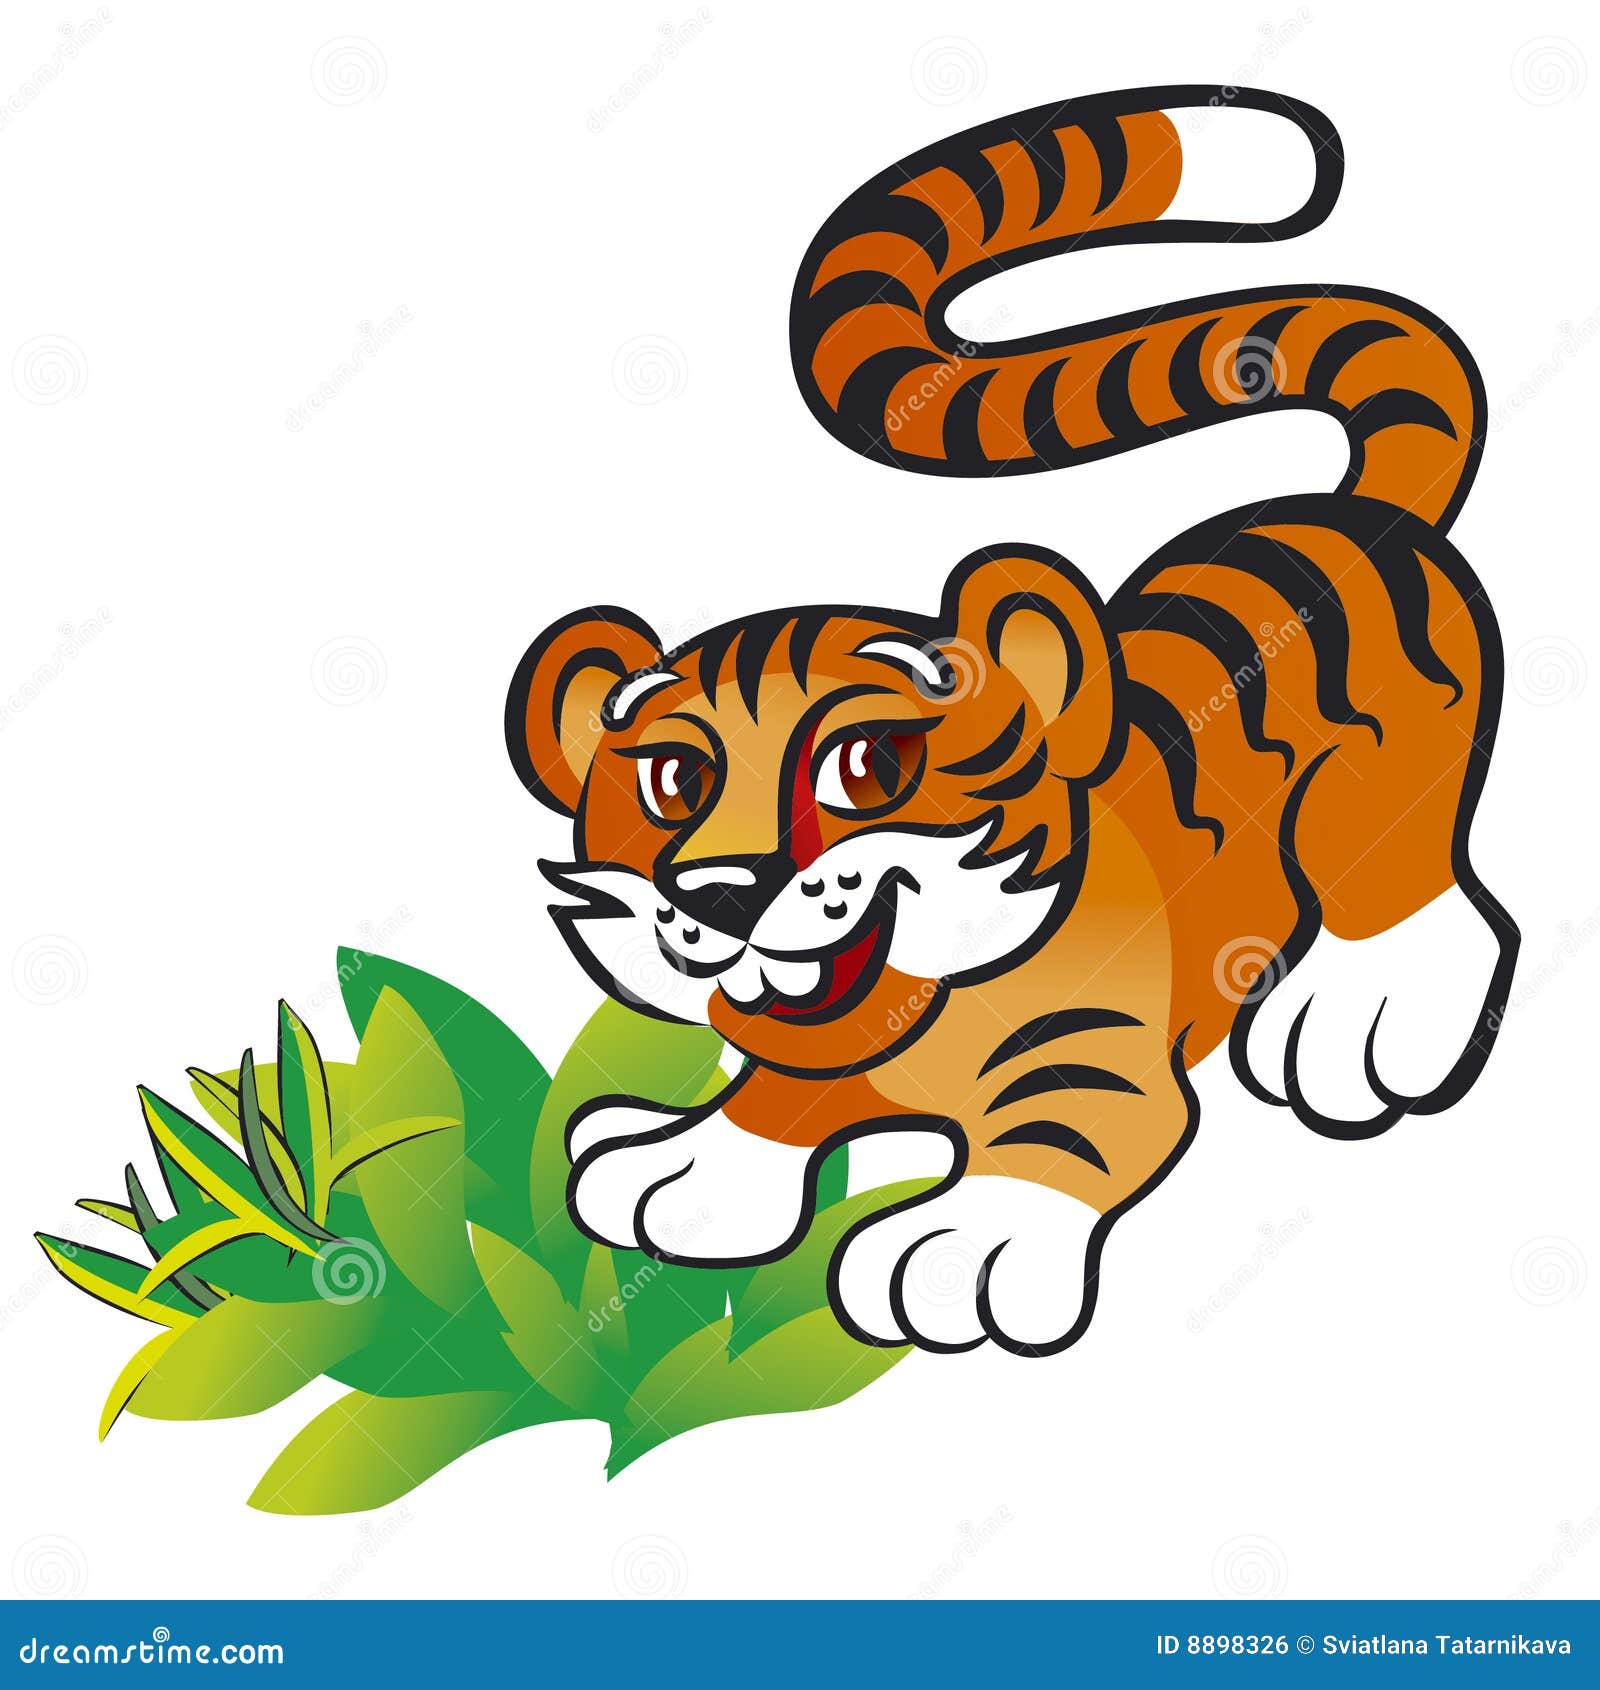 clip art tiger cub - photo #14